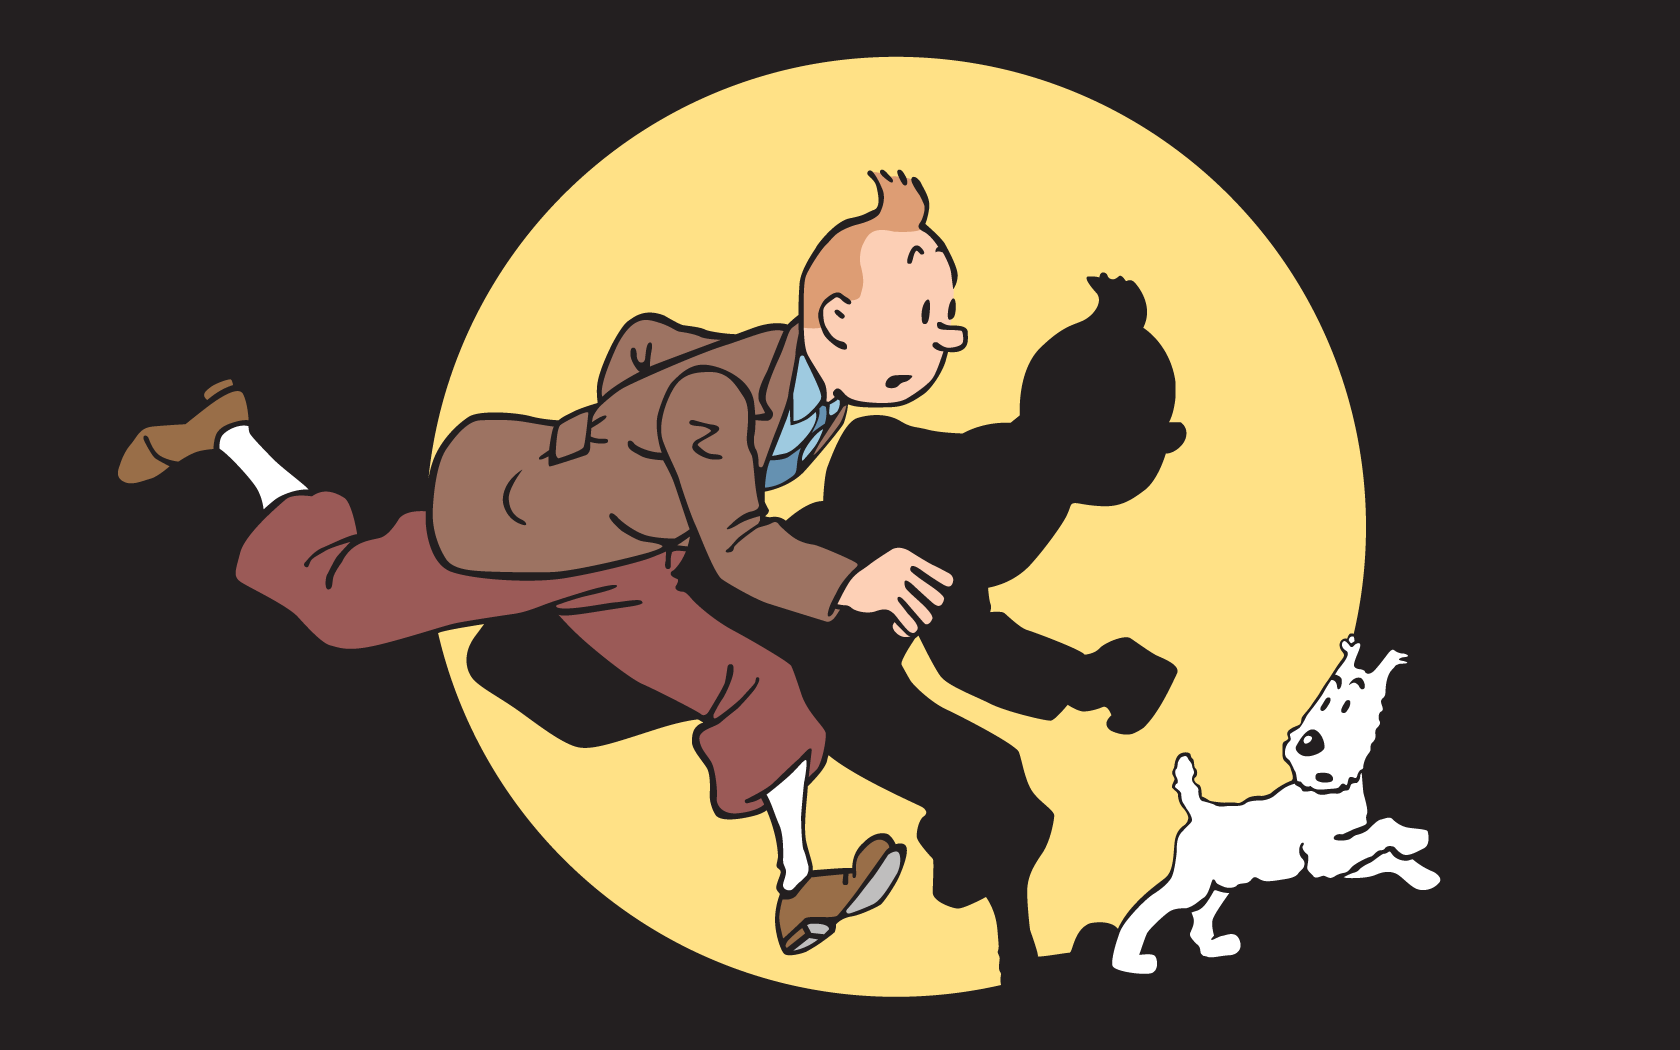 18+] Tintin Cartoon Wallpapers - WallpaperSafari